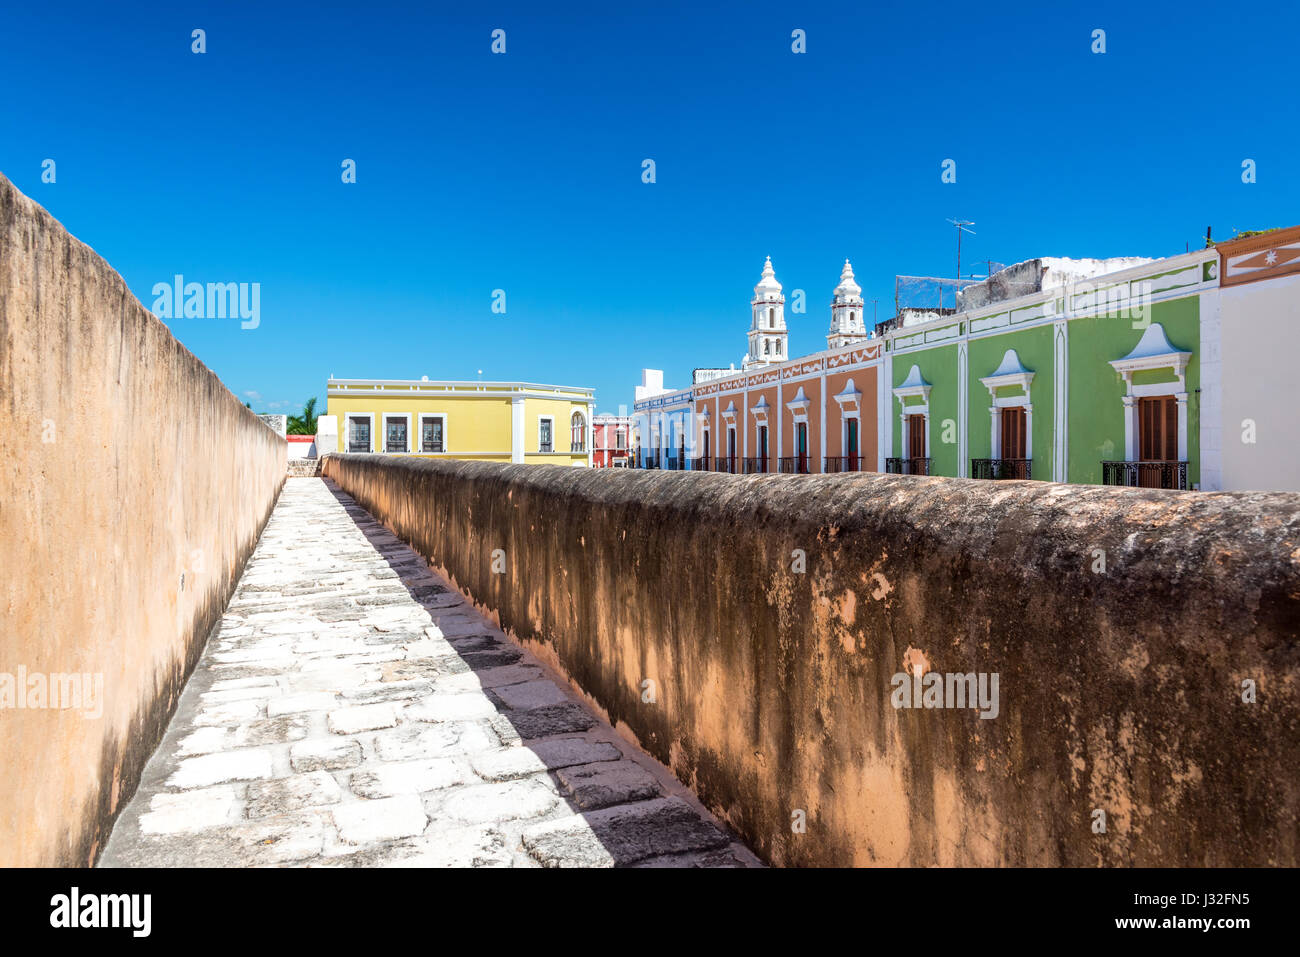 Les bâtiments coloniaux colorés à Campeche, Mexique comme vu du haut de la muraille Banque D'Images